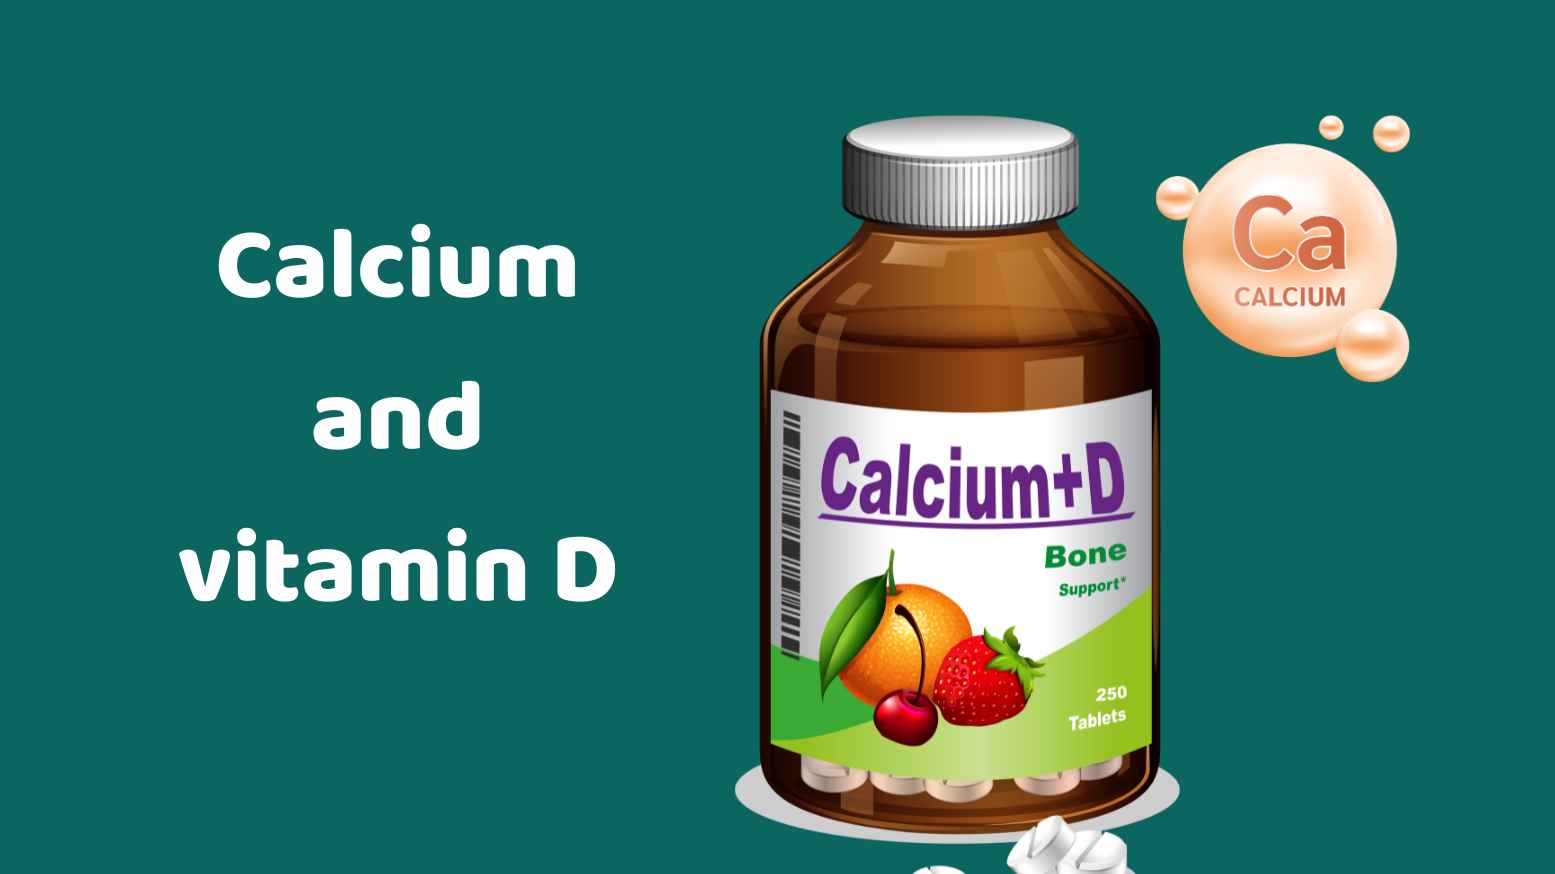 Calcium and vitamin D